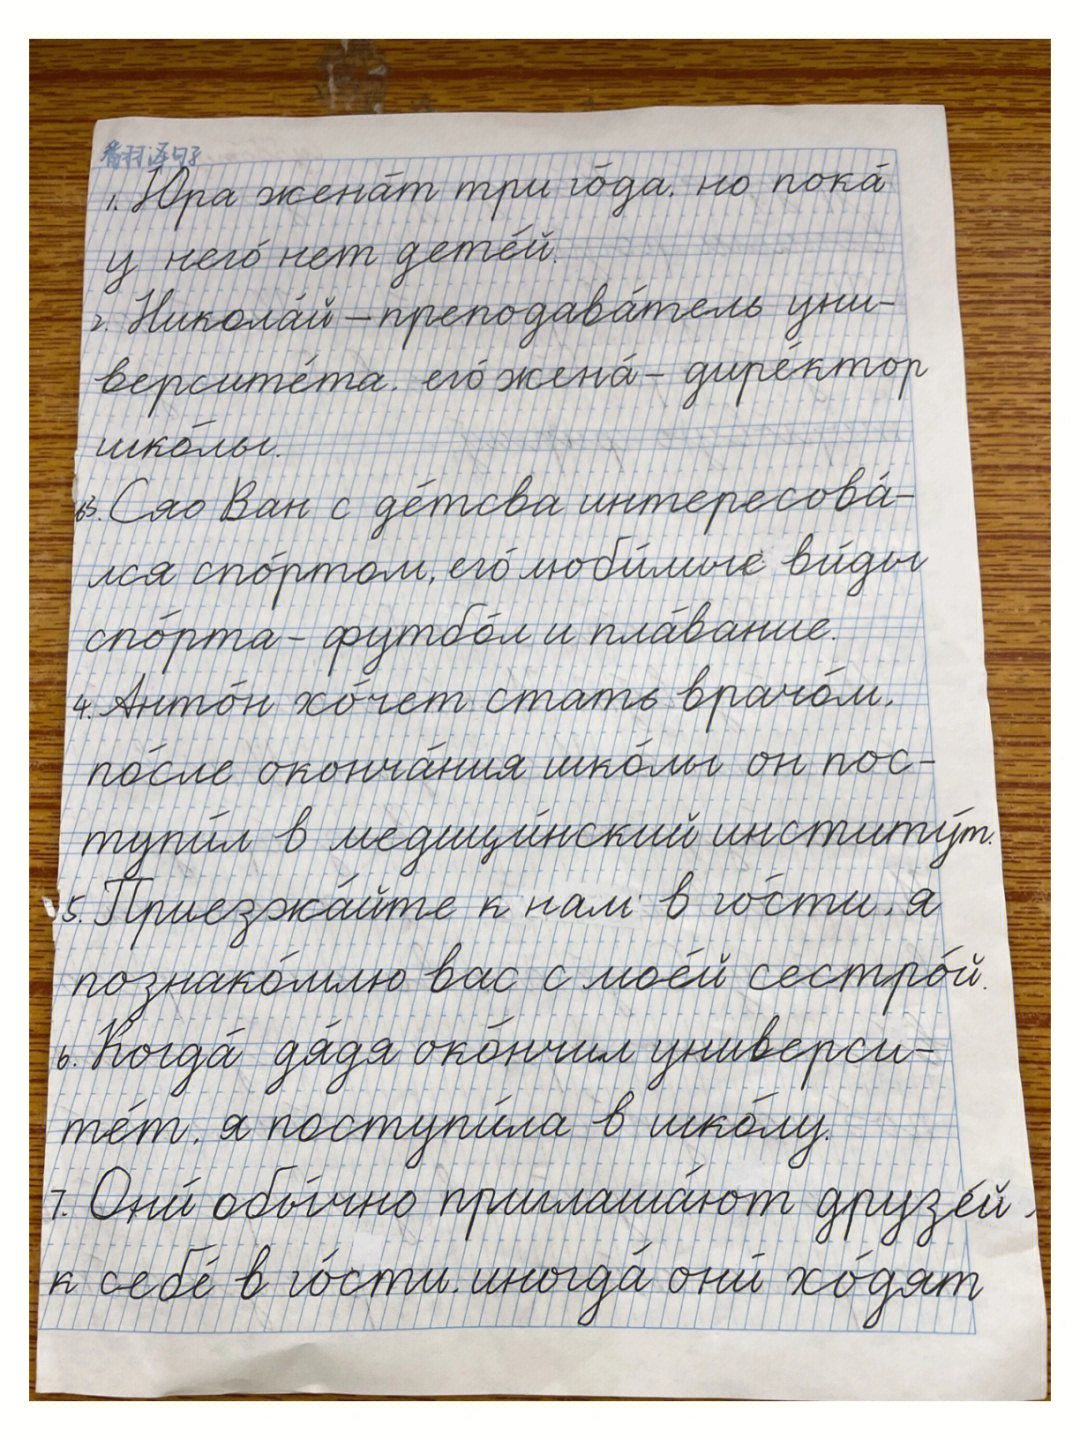 俄语书信格式图片图片